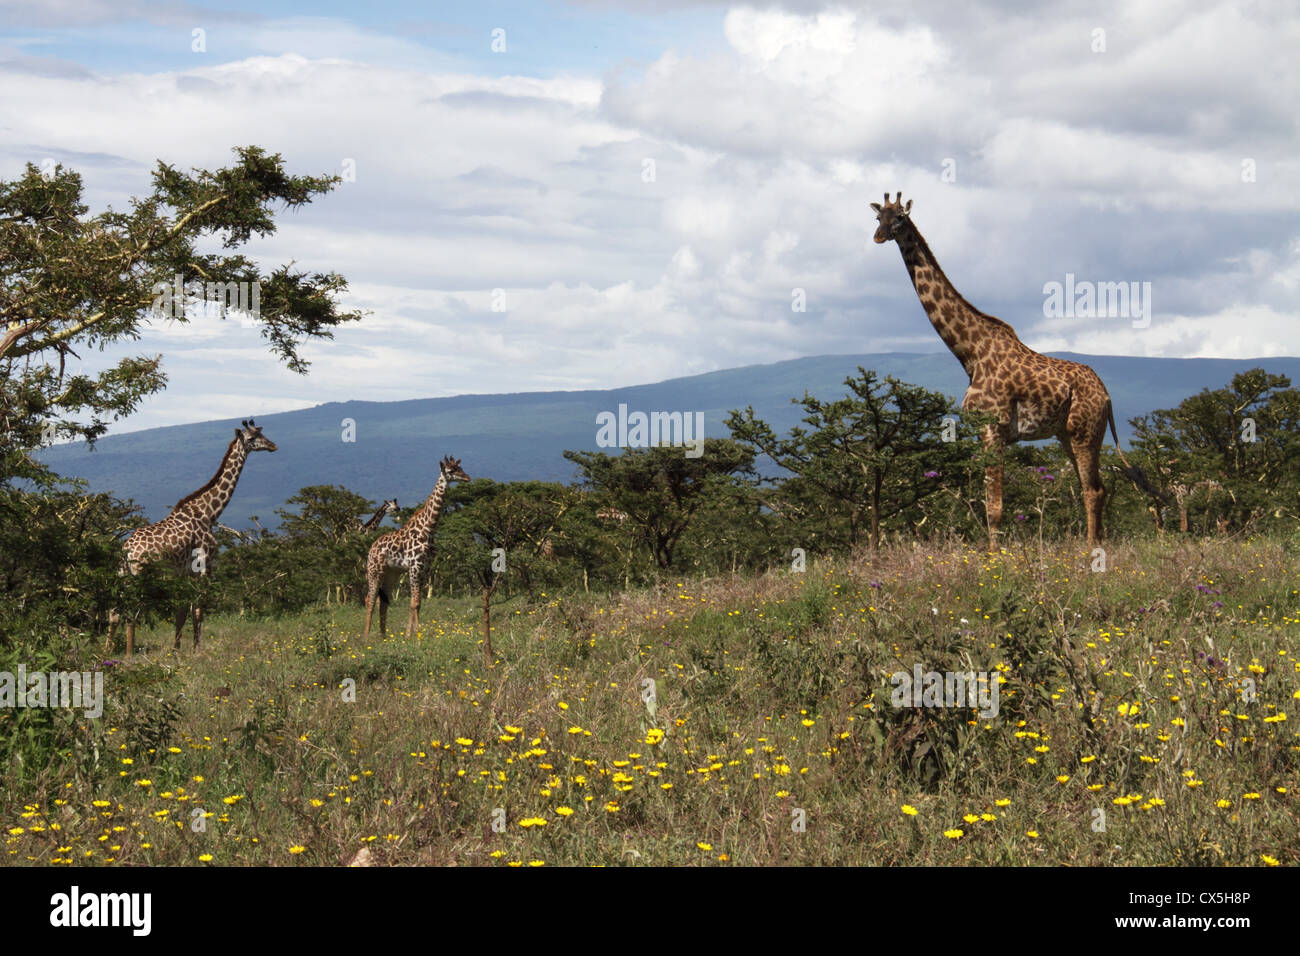 Giraffes, Serengeti National Park, Tanzania, Africa Stock Photo